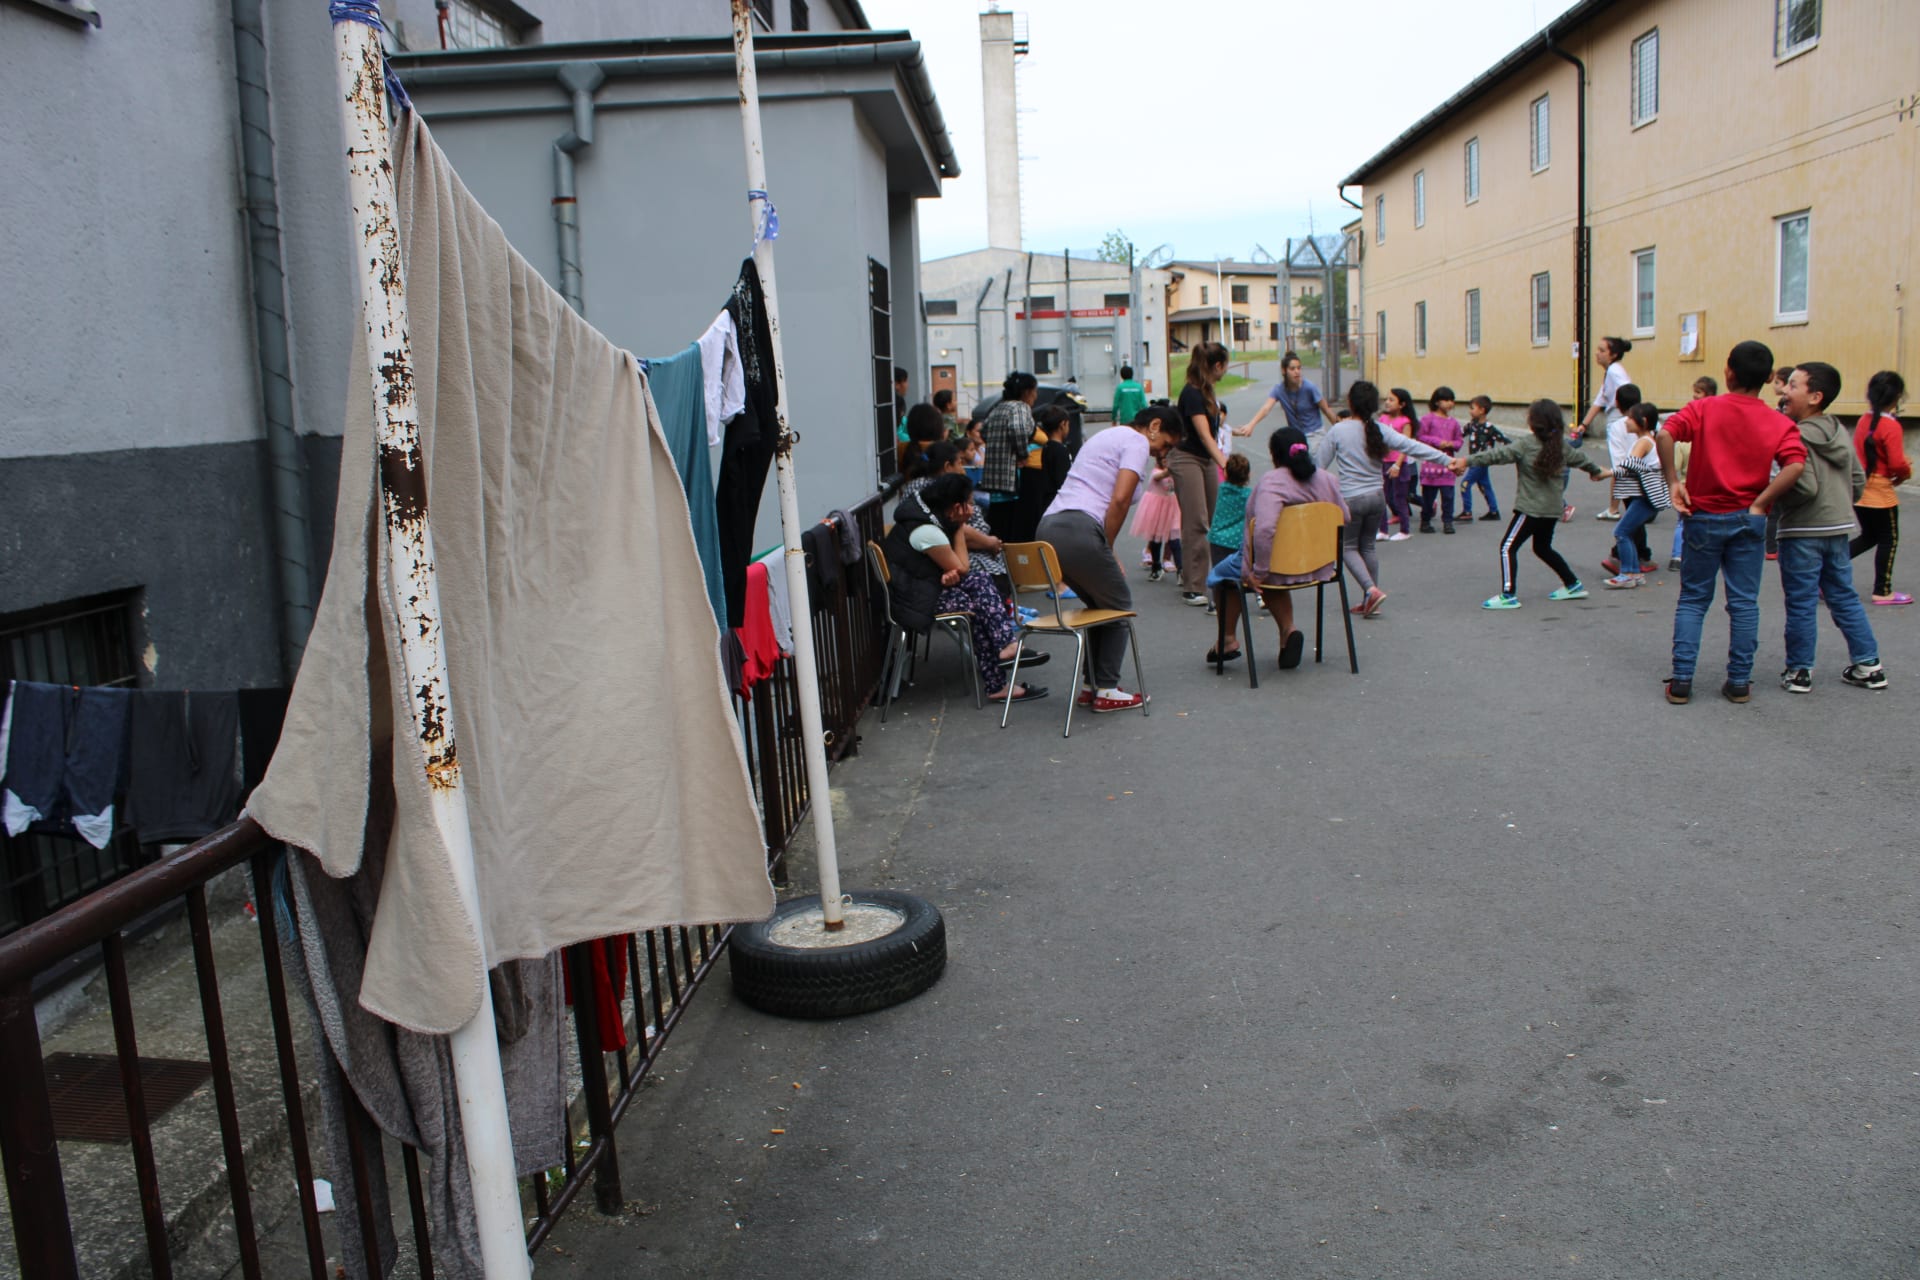 Uprchlický tábor ve Vyšních Lhotách. Všední realita za ostnatým drátem, série momentek z každodenního života romských běženců z Ukrajiny.